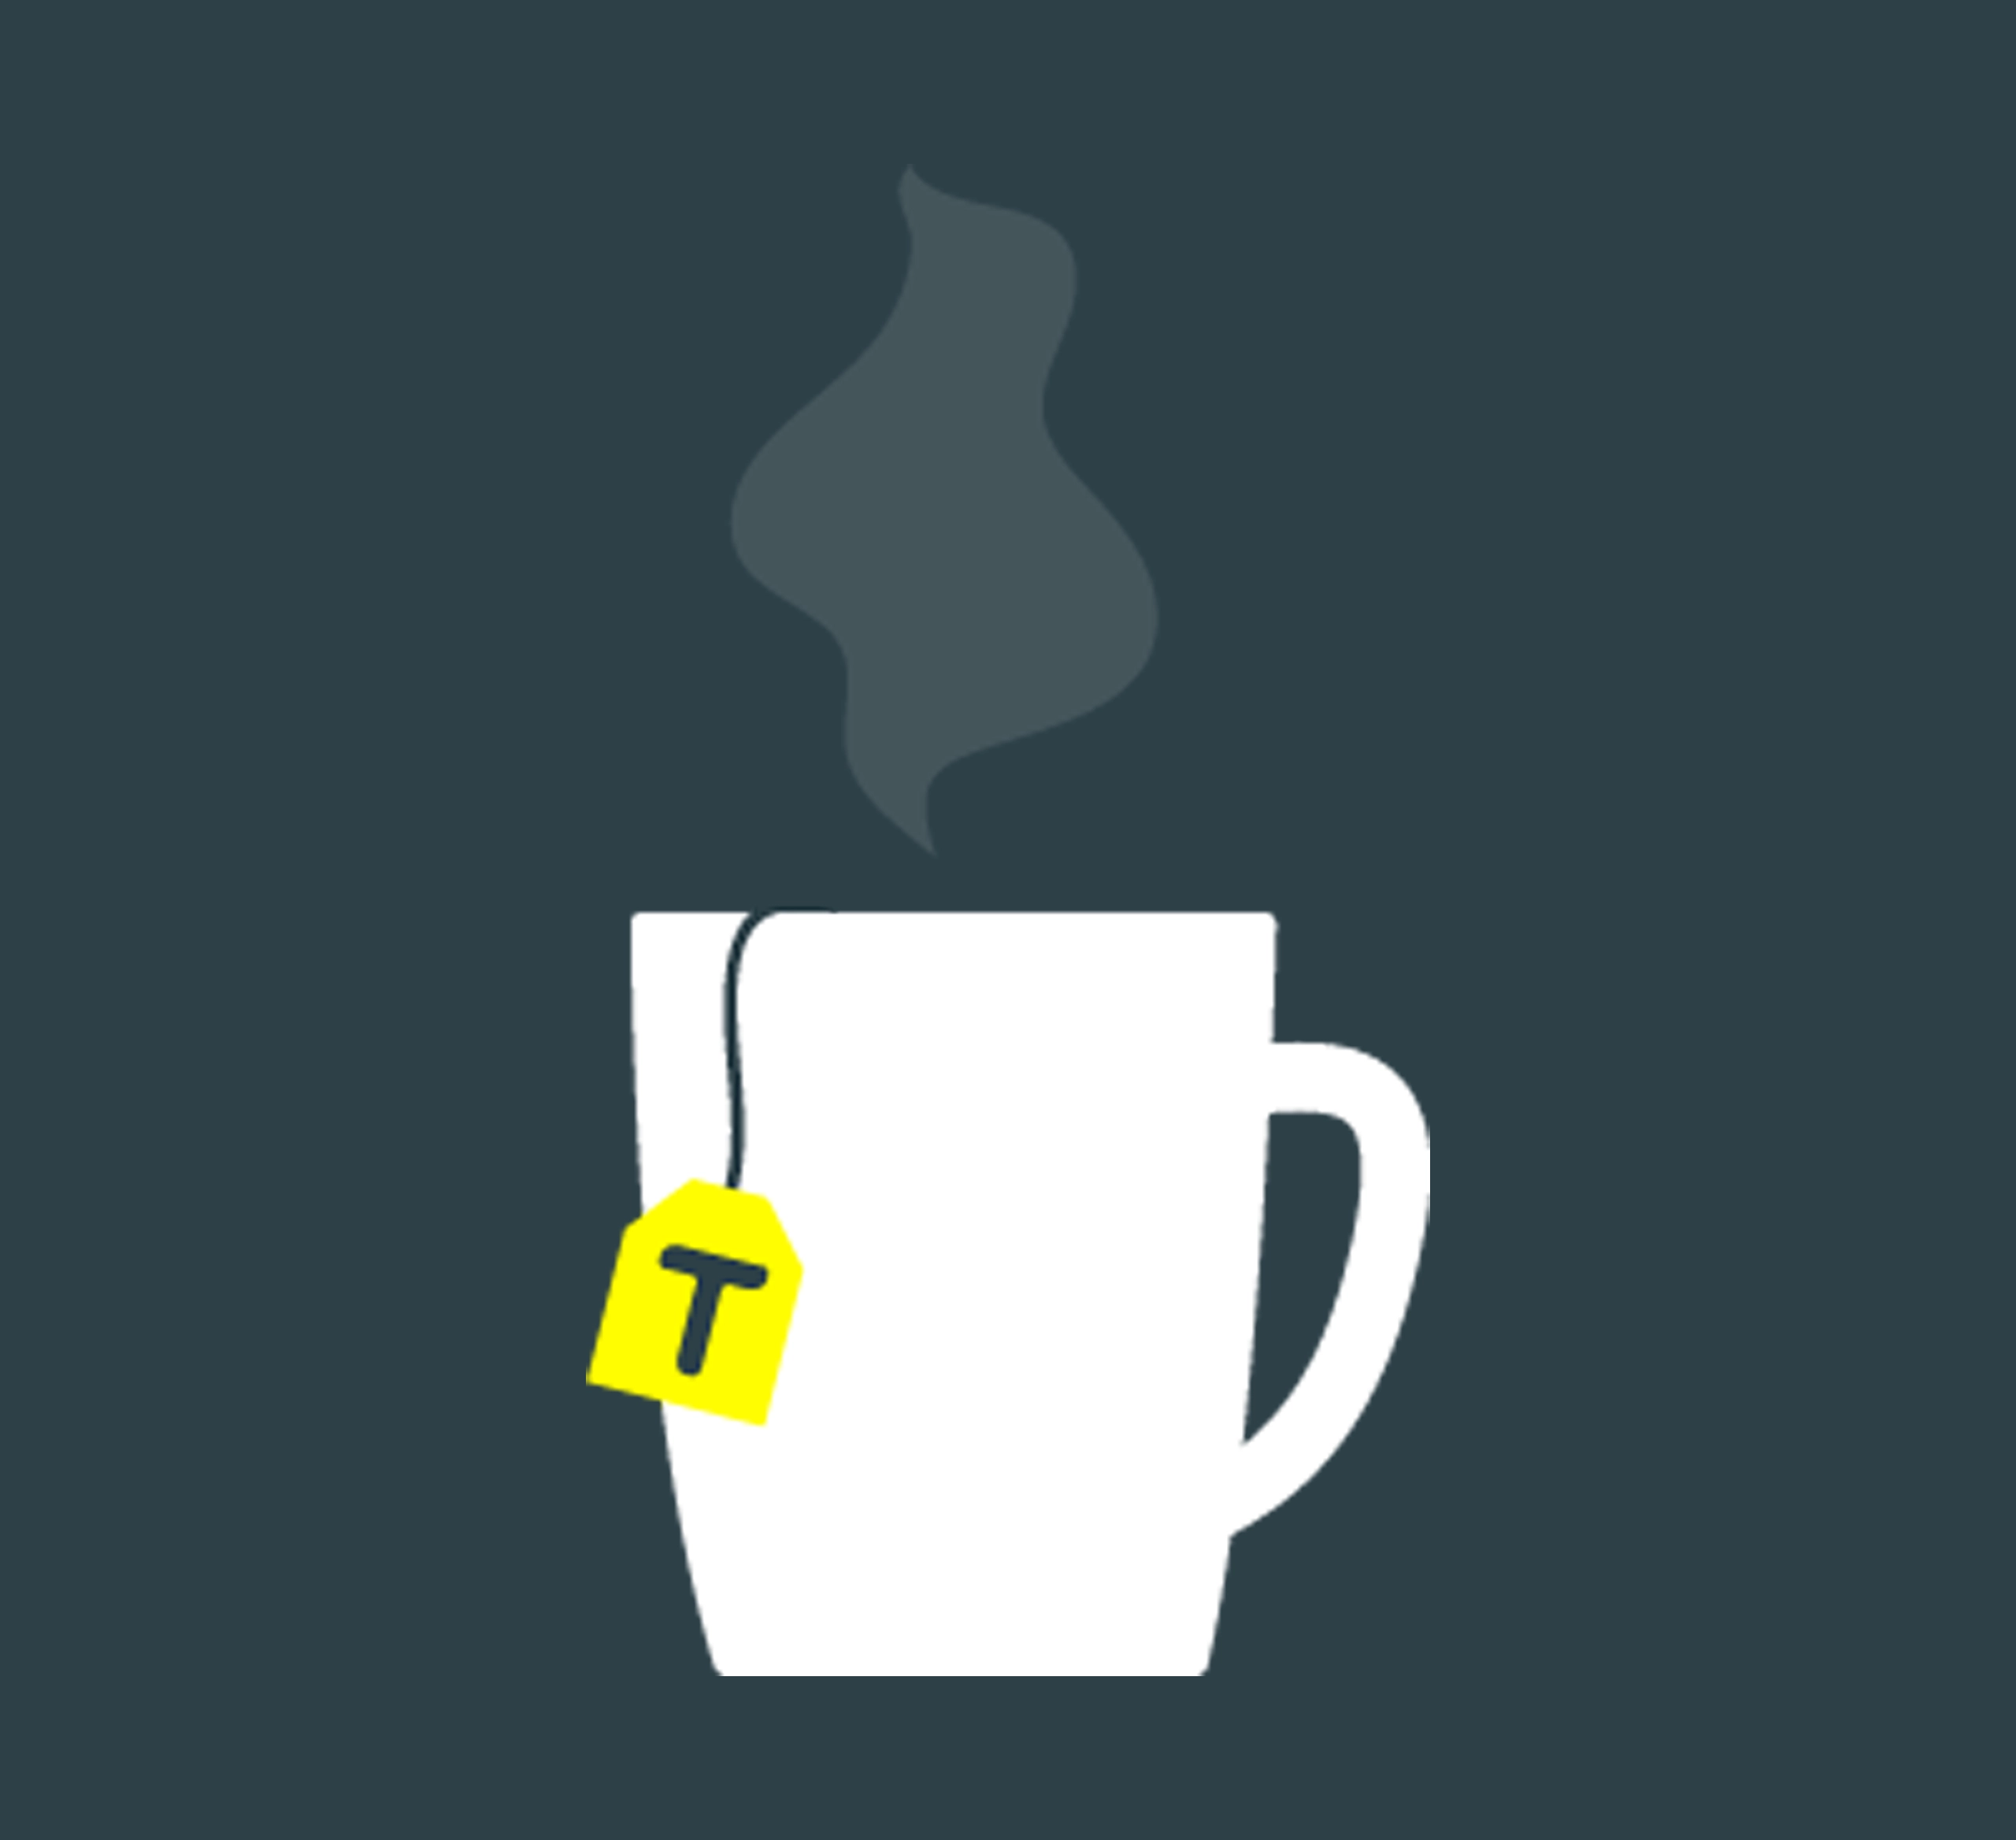 Steaming teacup image